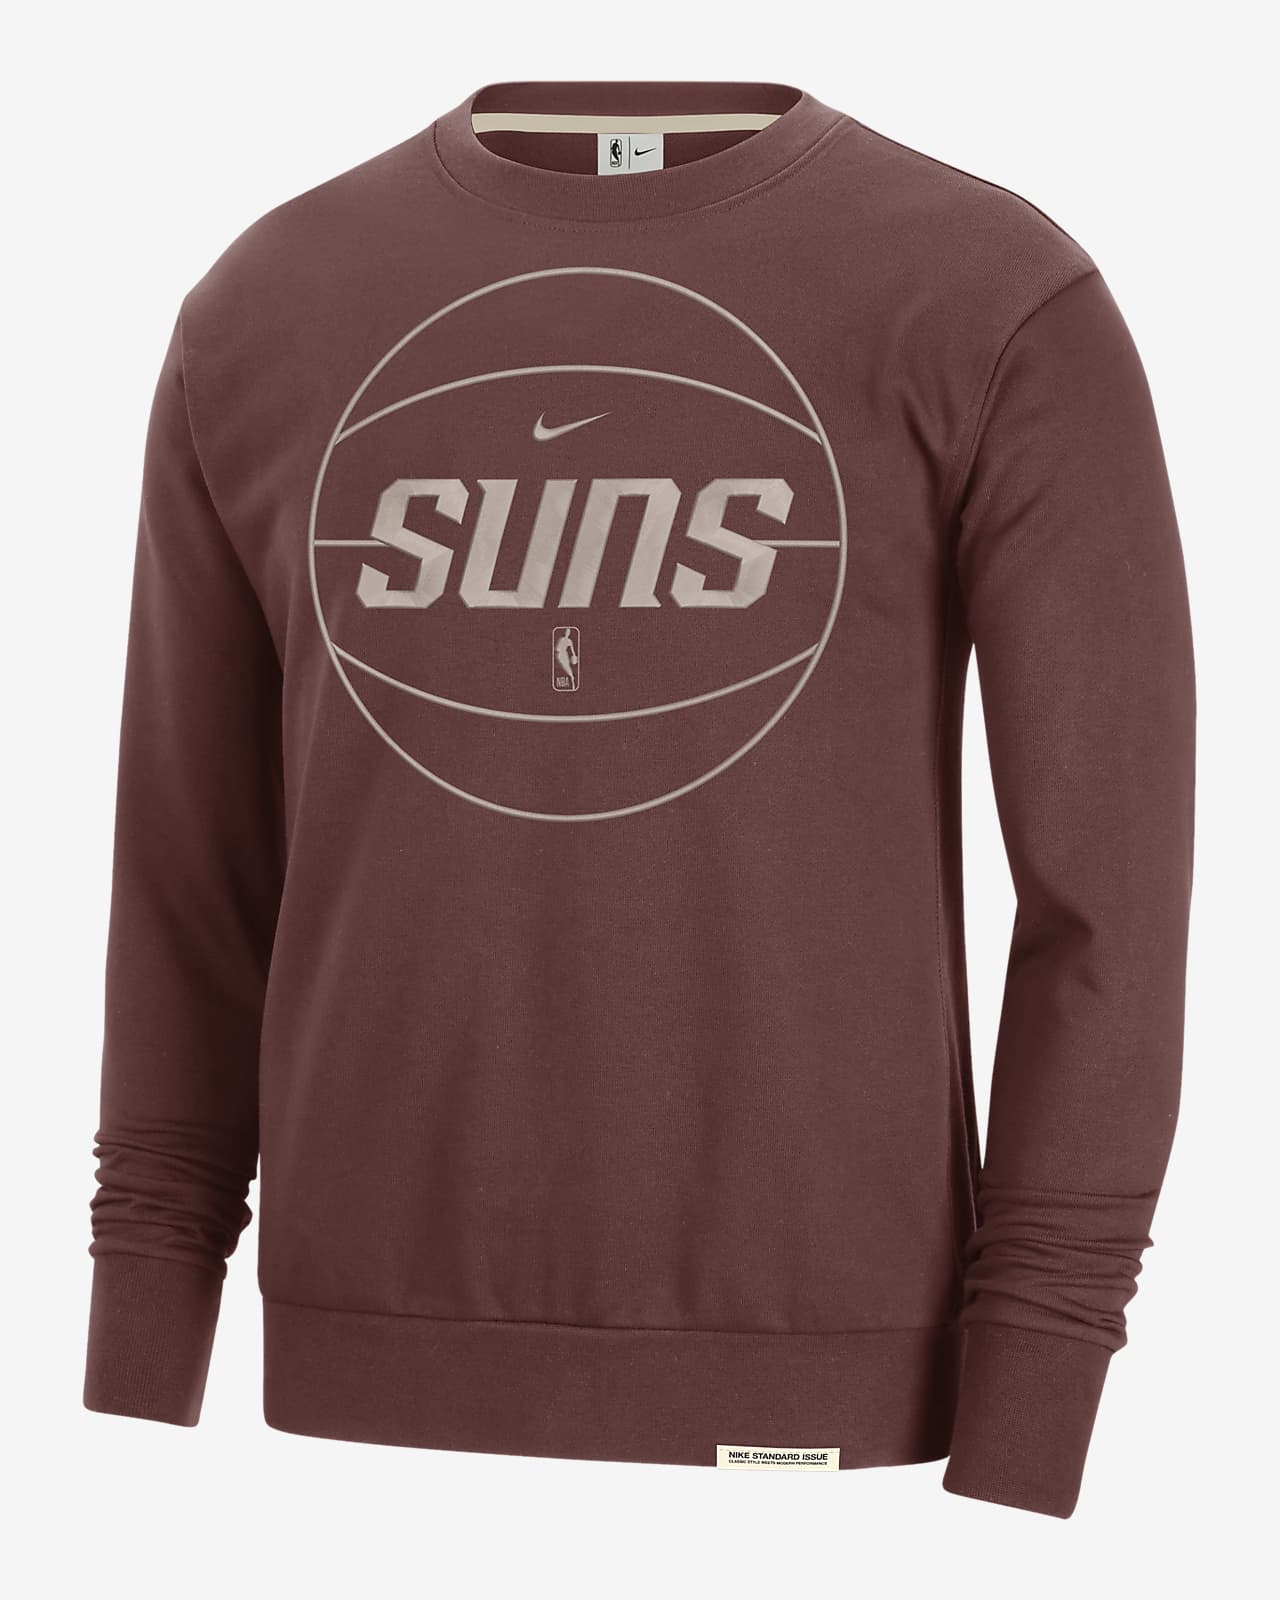 Phoenix Suns Standard Issue Men's Nike Dri-FIT NBA Sweatshirt